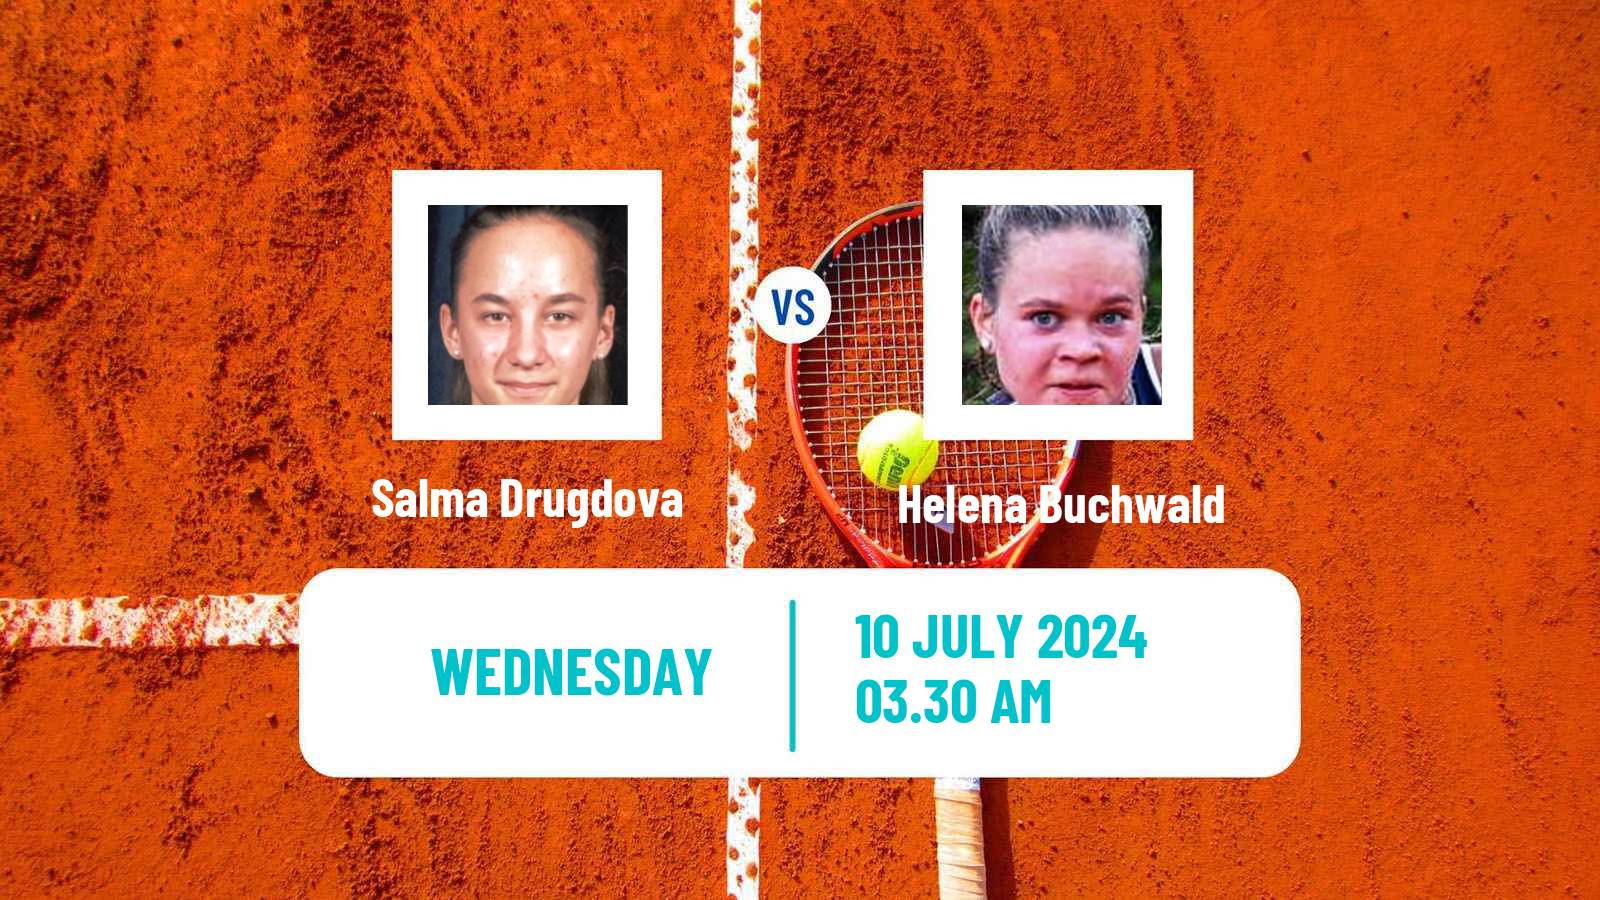 Tennis ITF W15 Grodzisk Mazowiecki Women Salma Drugdova - Helena Buchwald